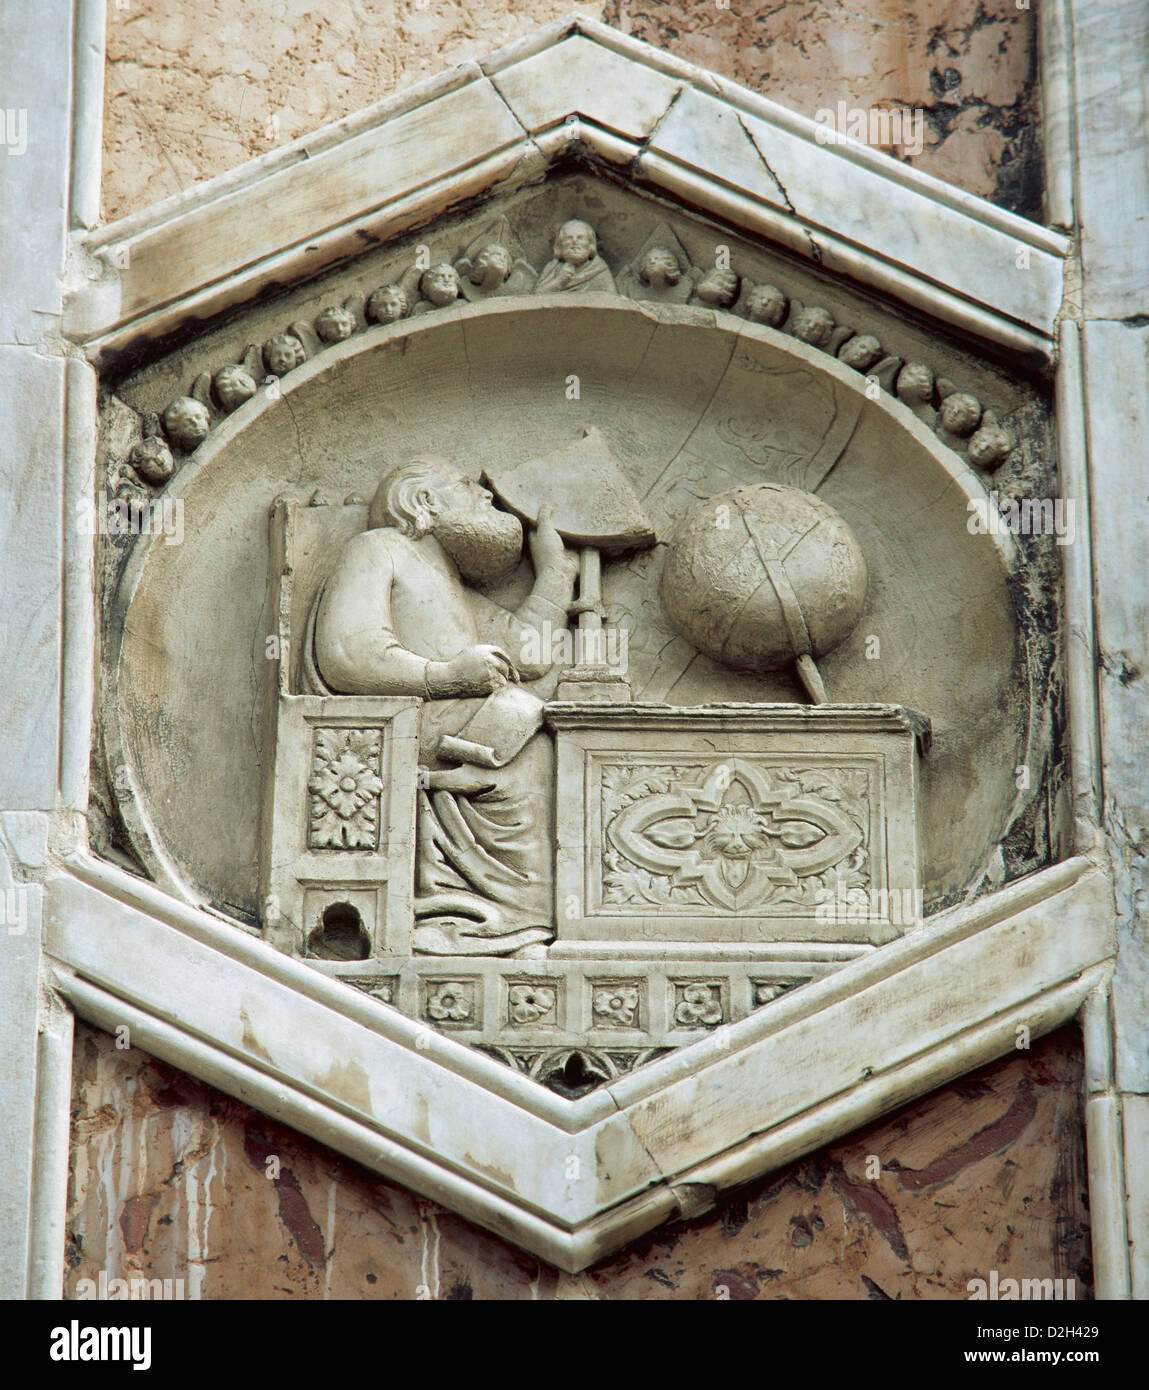 Gionitus. Erfinder der Astronomie, (1334-1336). Entlastung in der Exagonal-Paneele von den Campanile des Doms von Florenz. Italien. Stockfoto